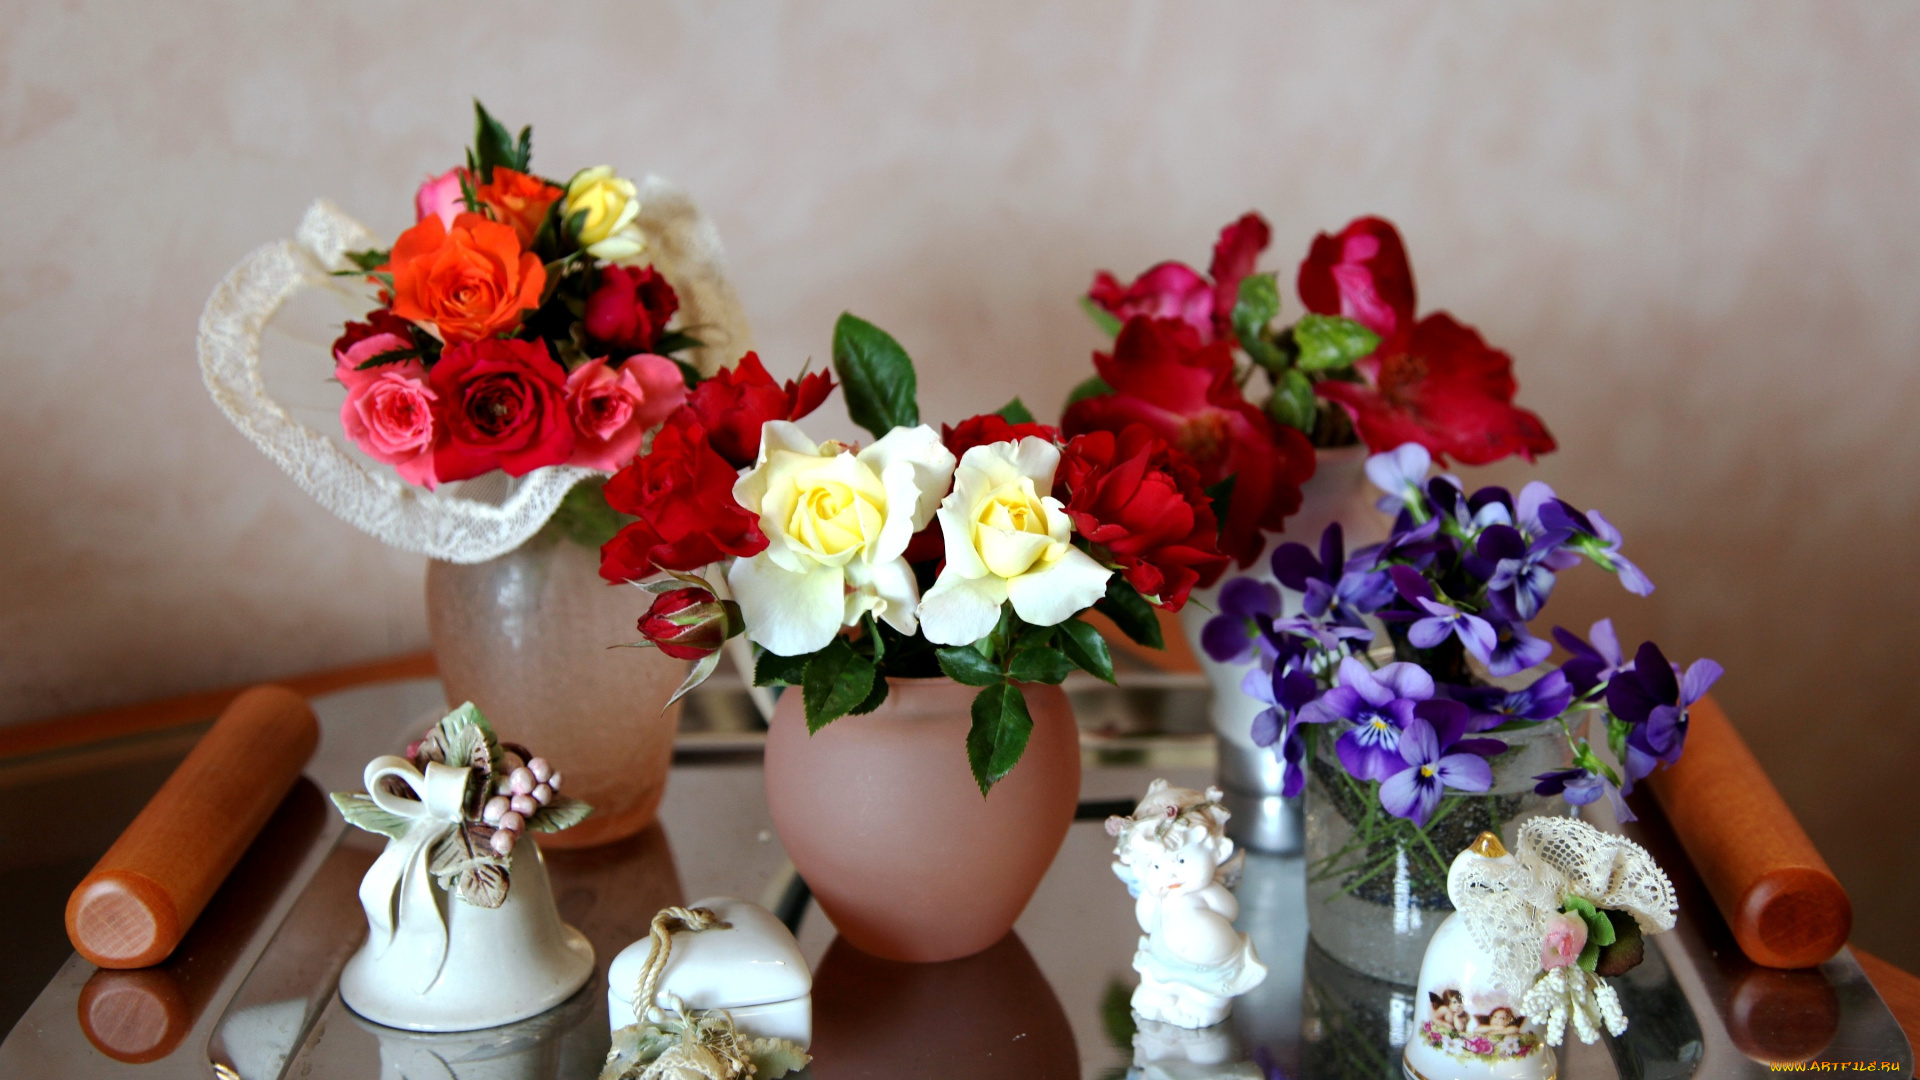 цветы, разные, вместе, розы, виола, колокольчик, поднос, фарфор